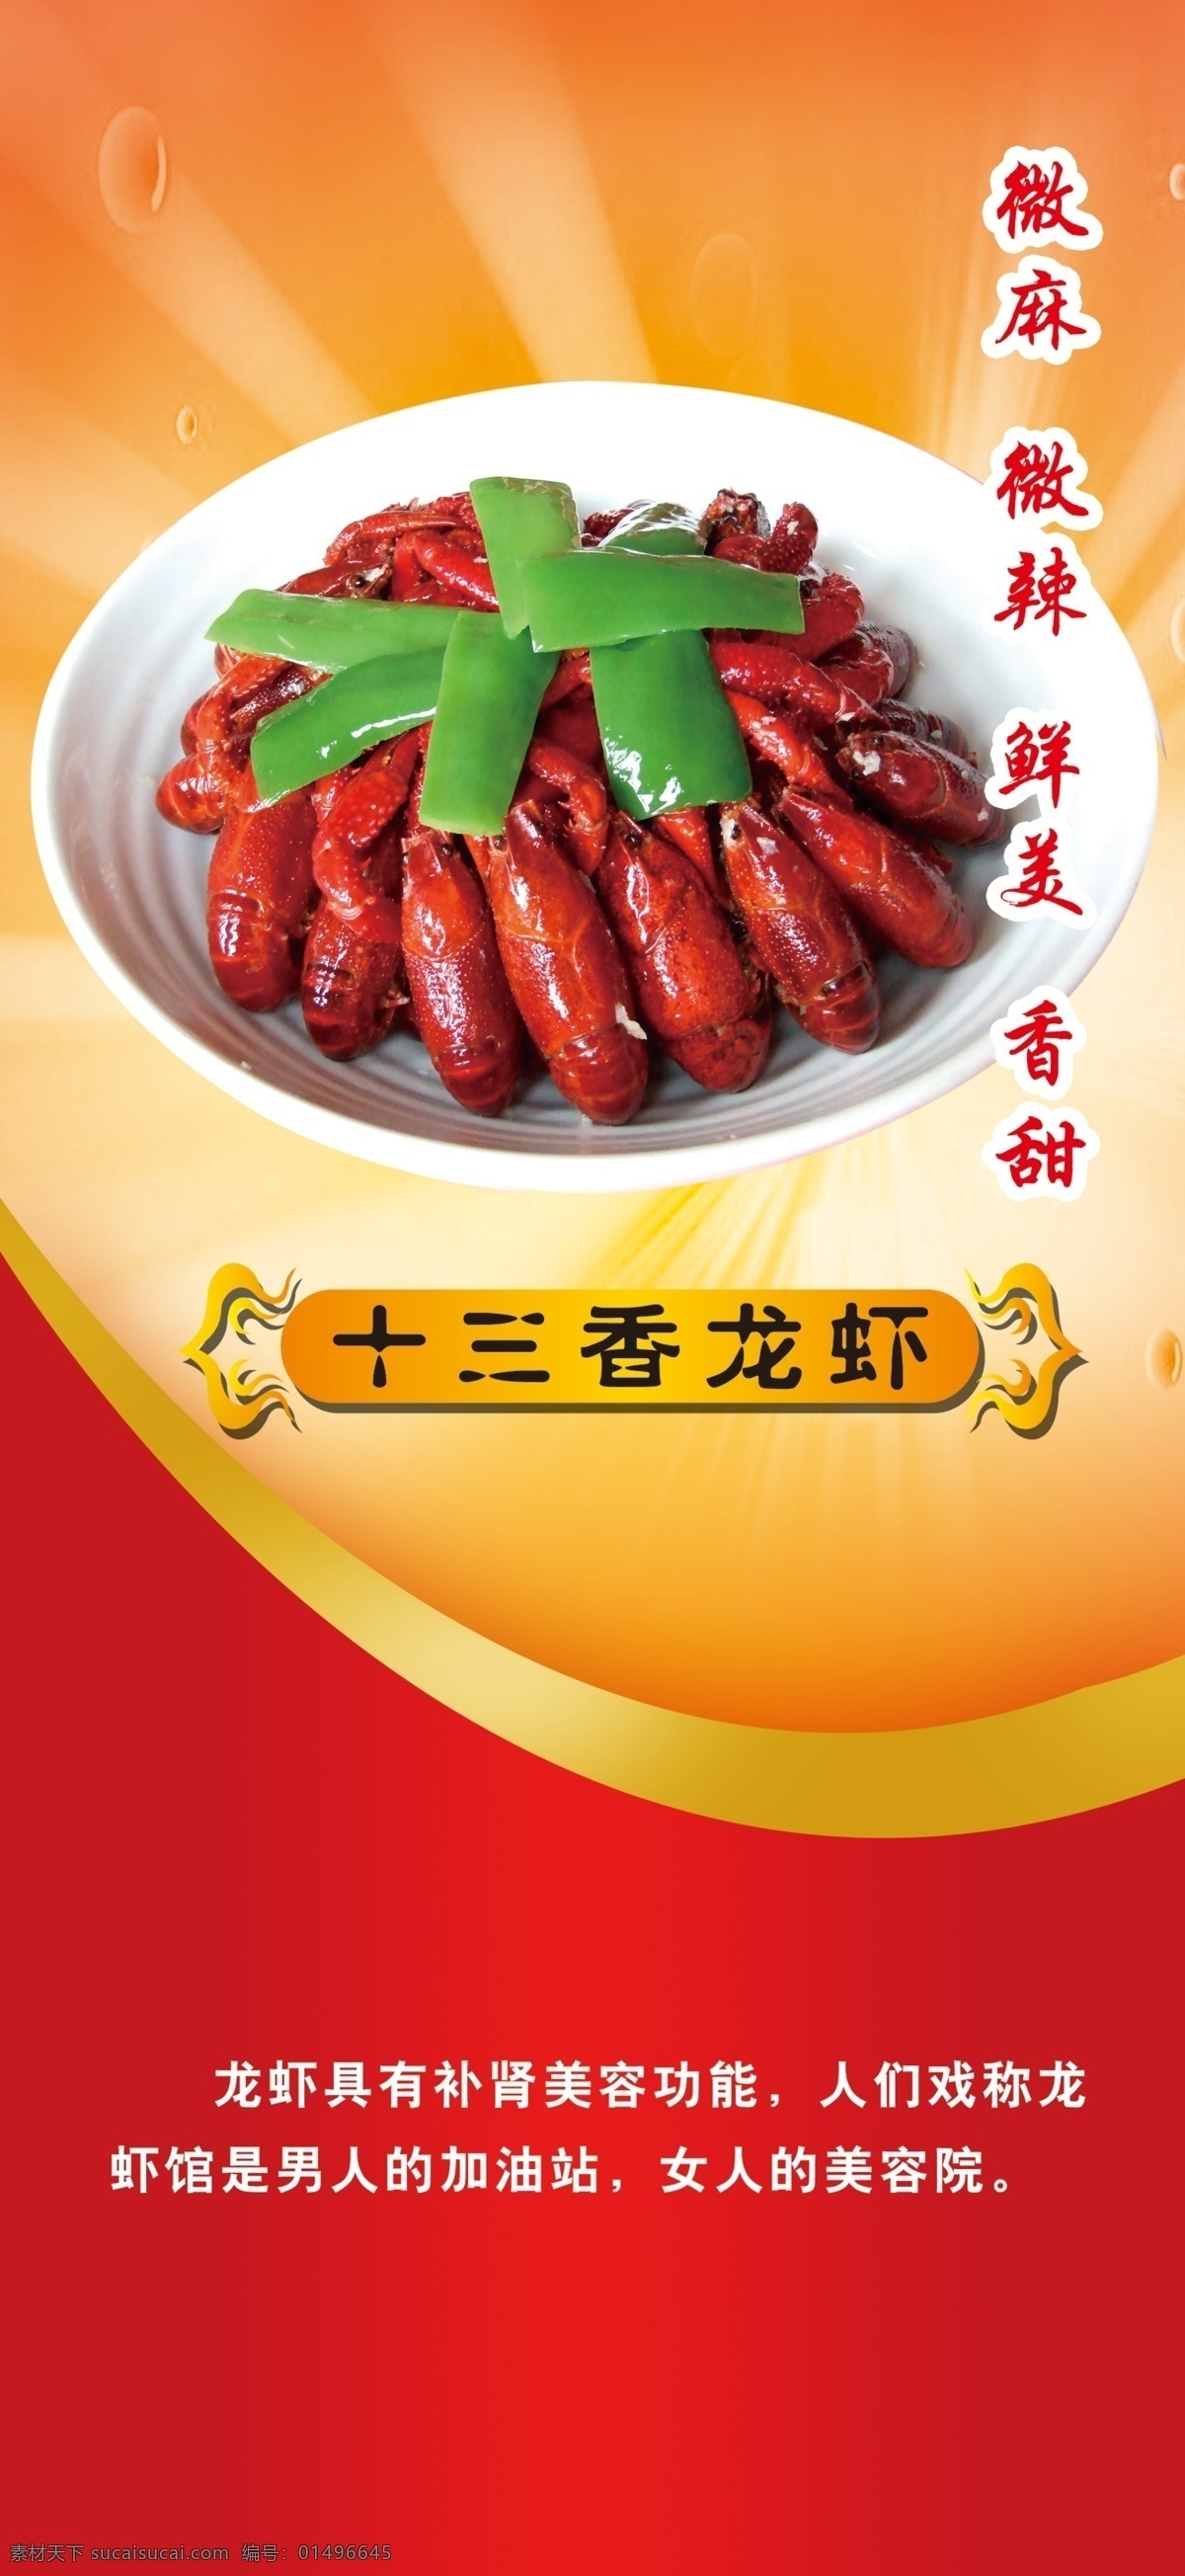 十三香龙虾 十三香 龙虾 龙虾素材 美食 美味 广告设计模板 源文件